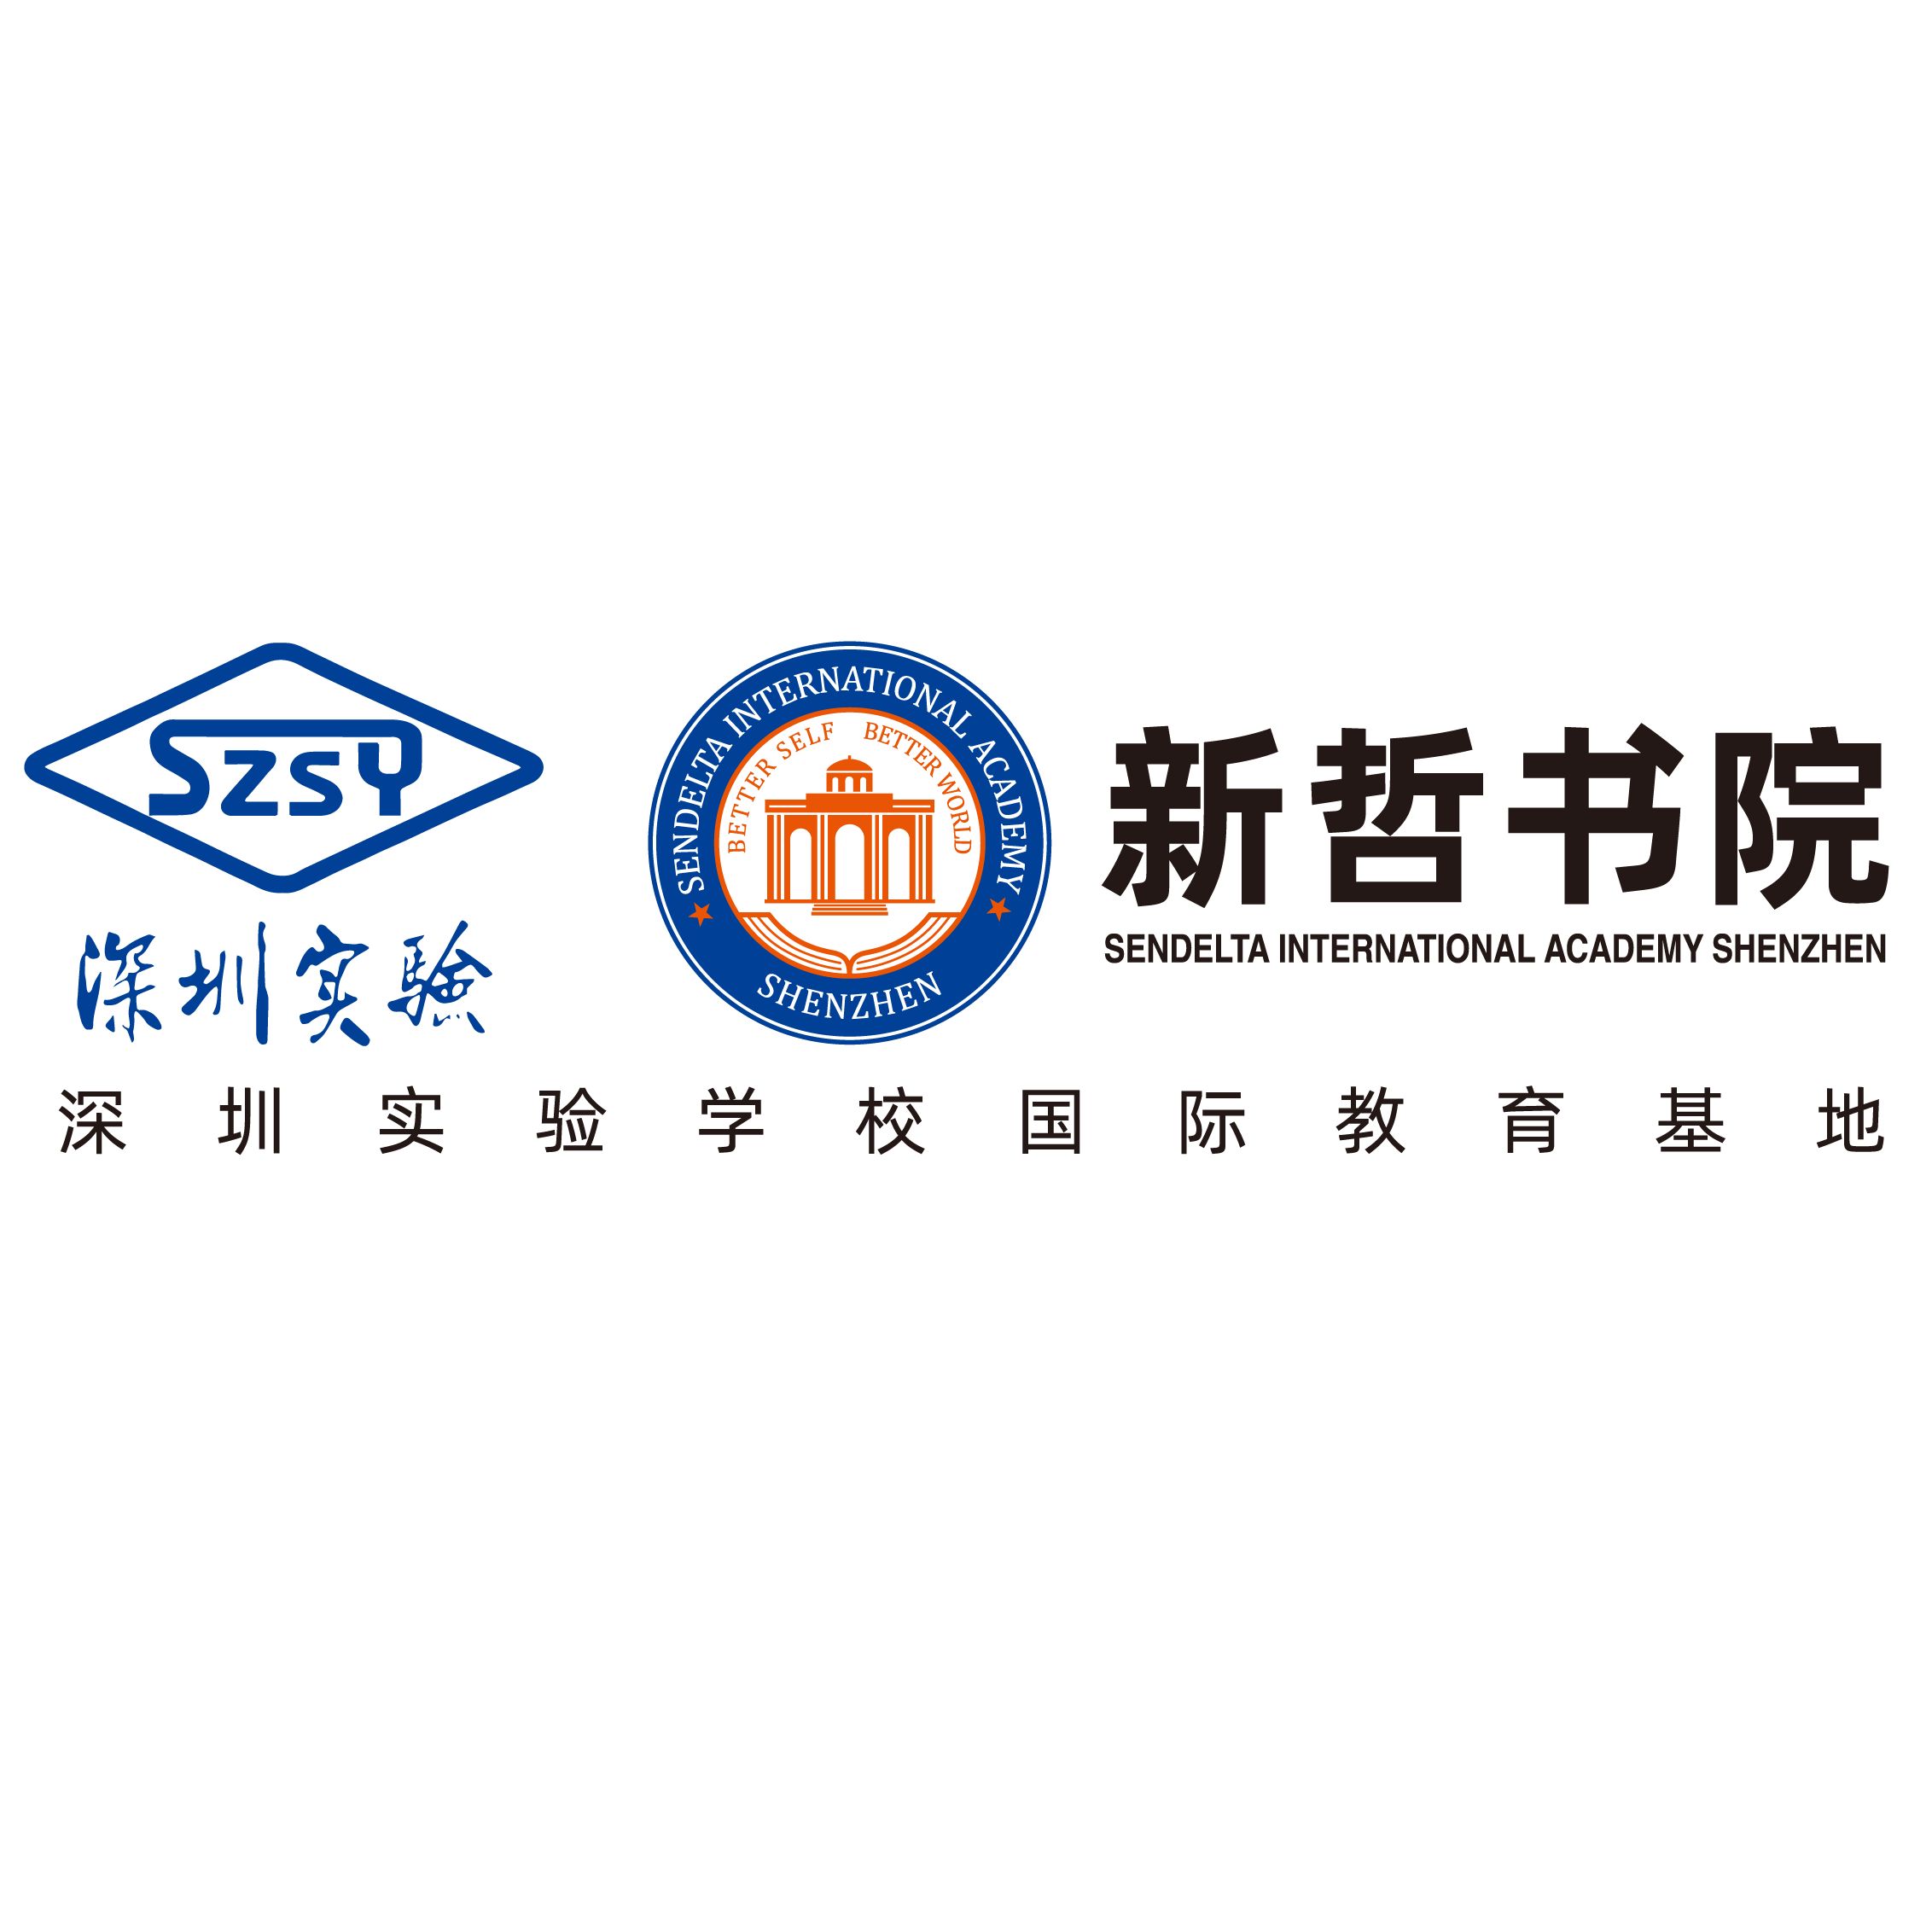 Sendelta International Academy Shenzhen logo